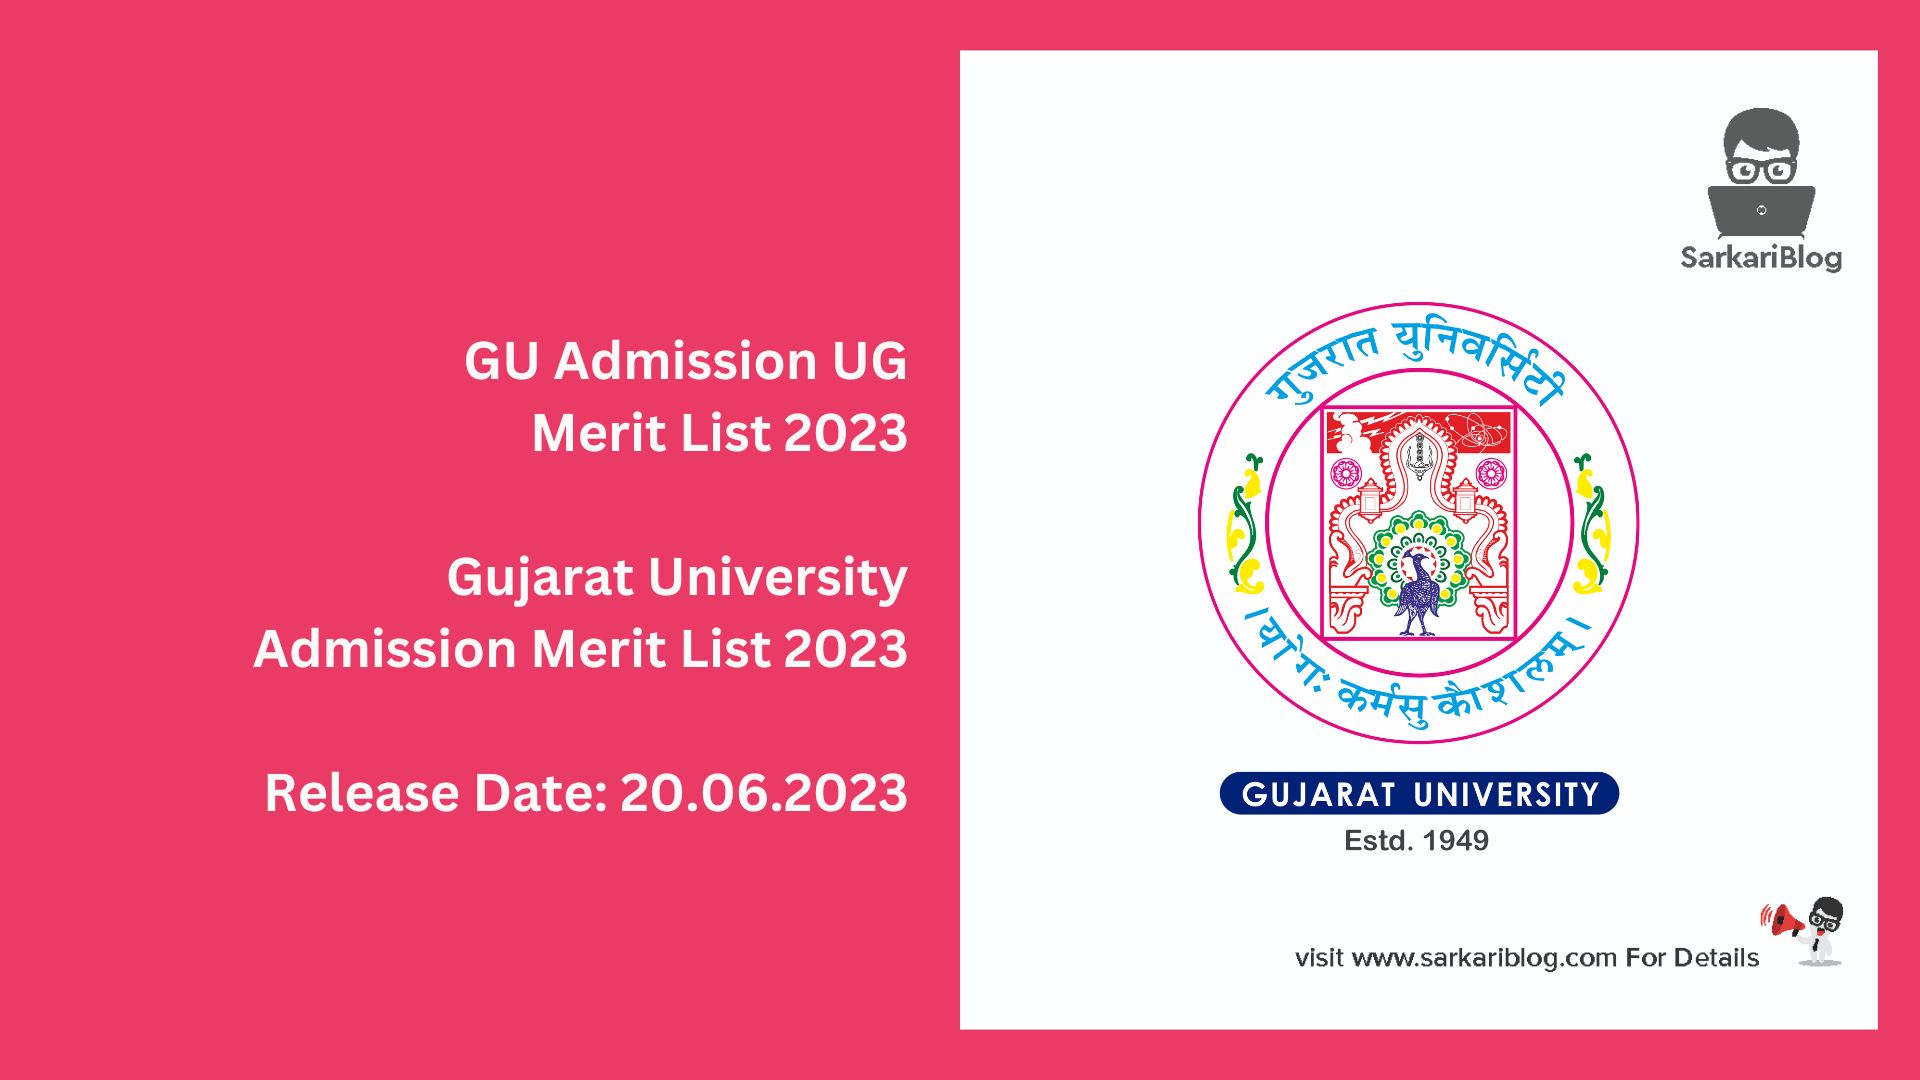 GU Admission UG Merit List 2023